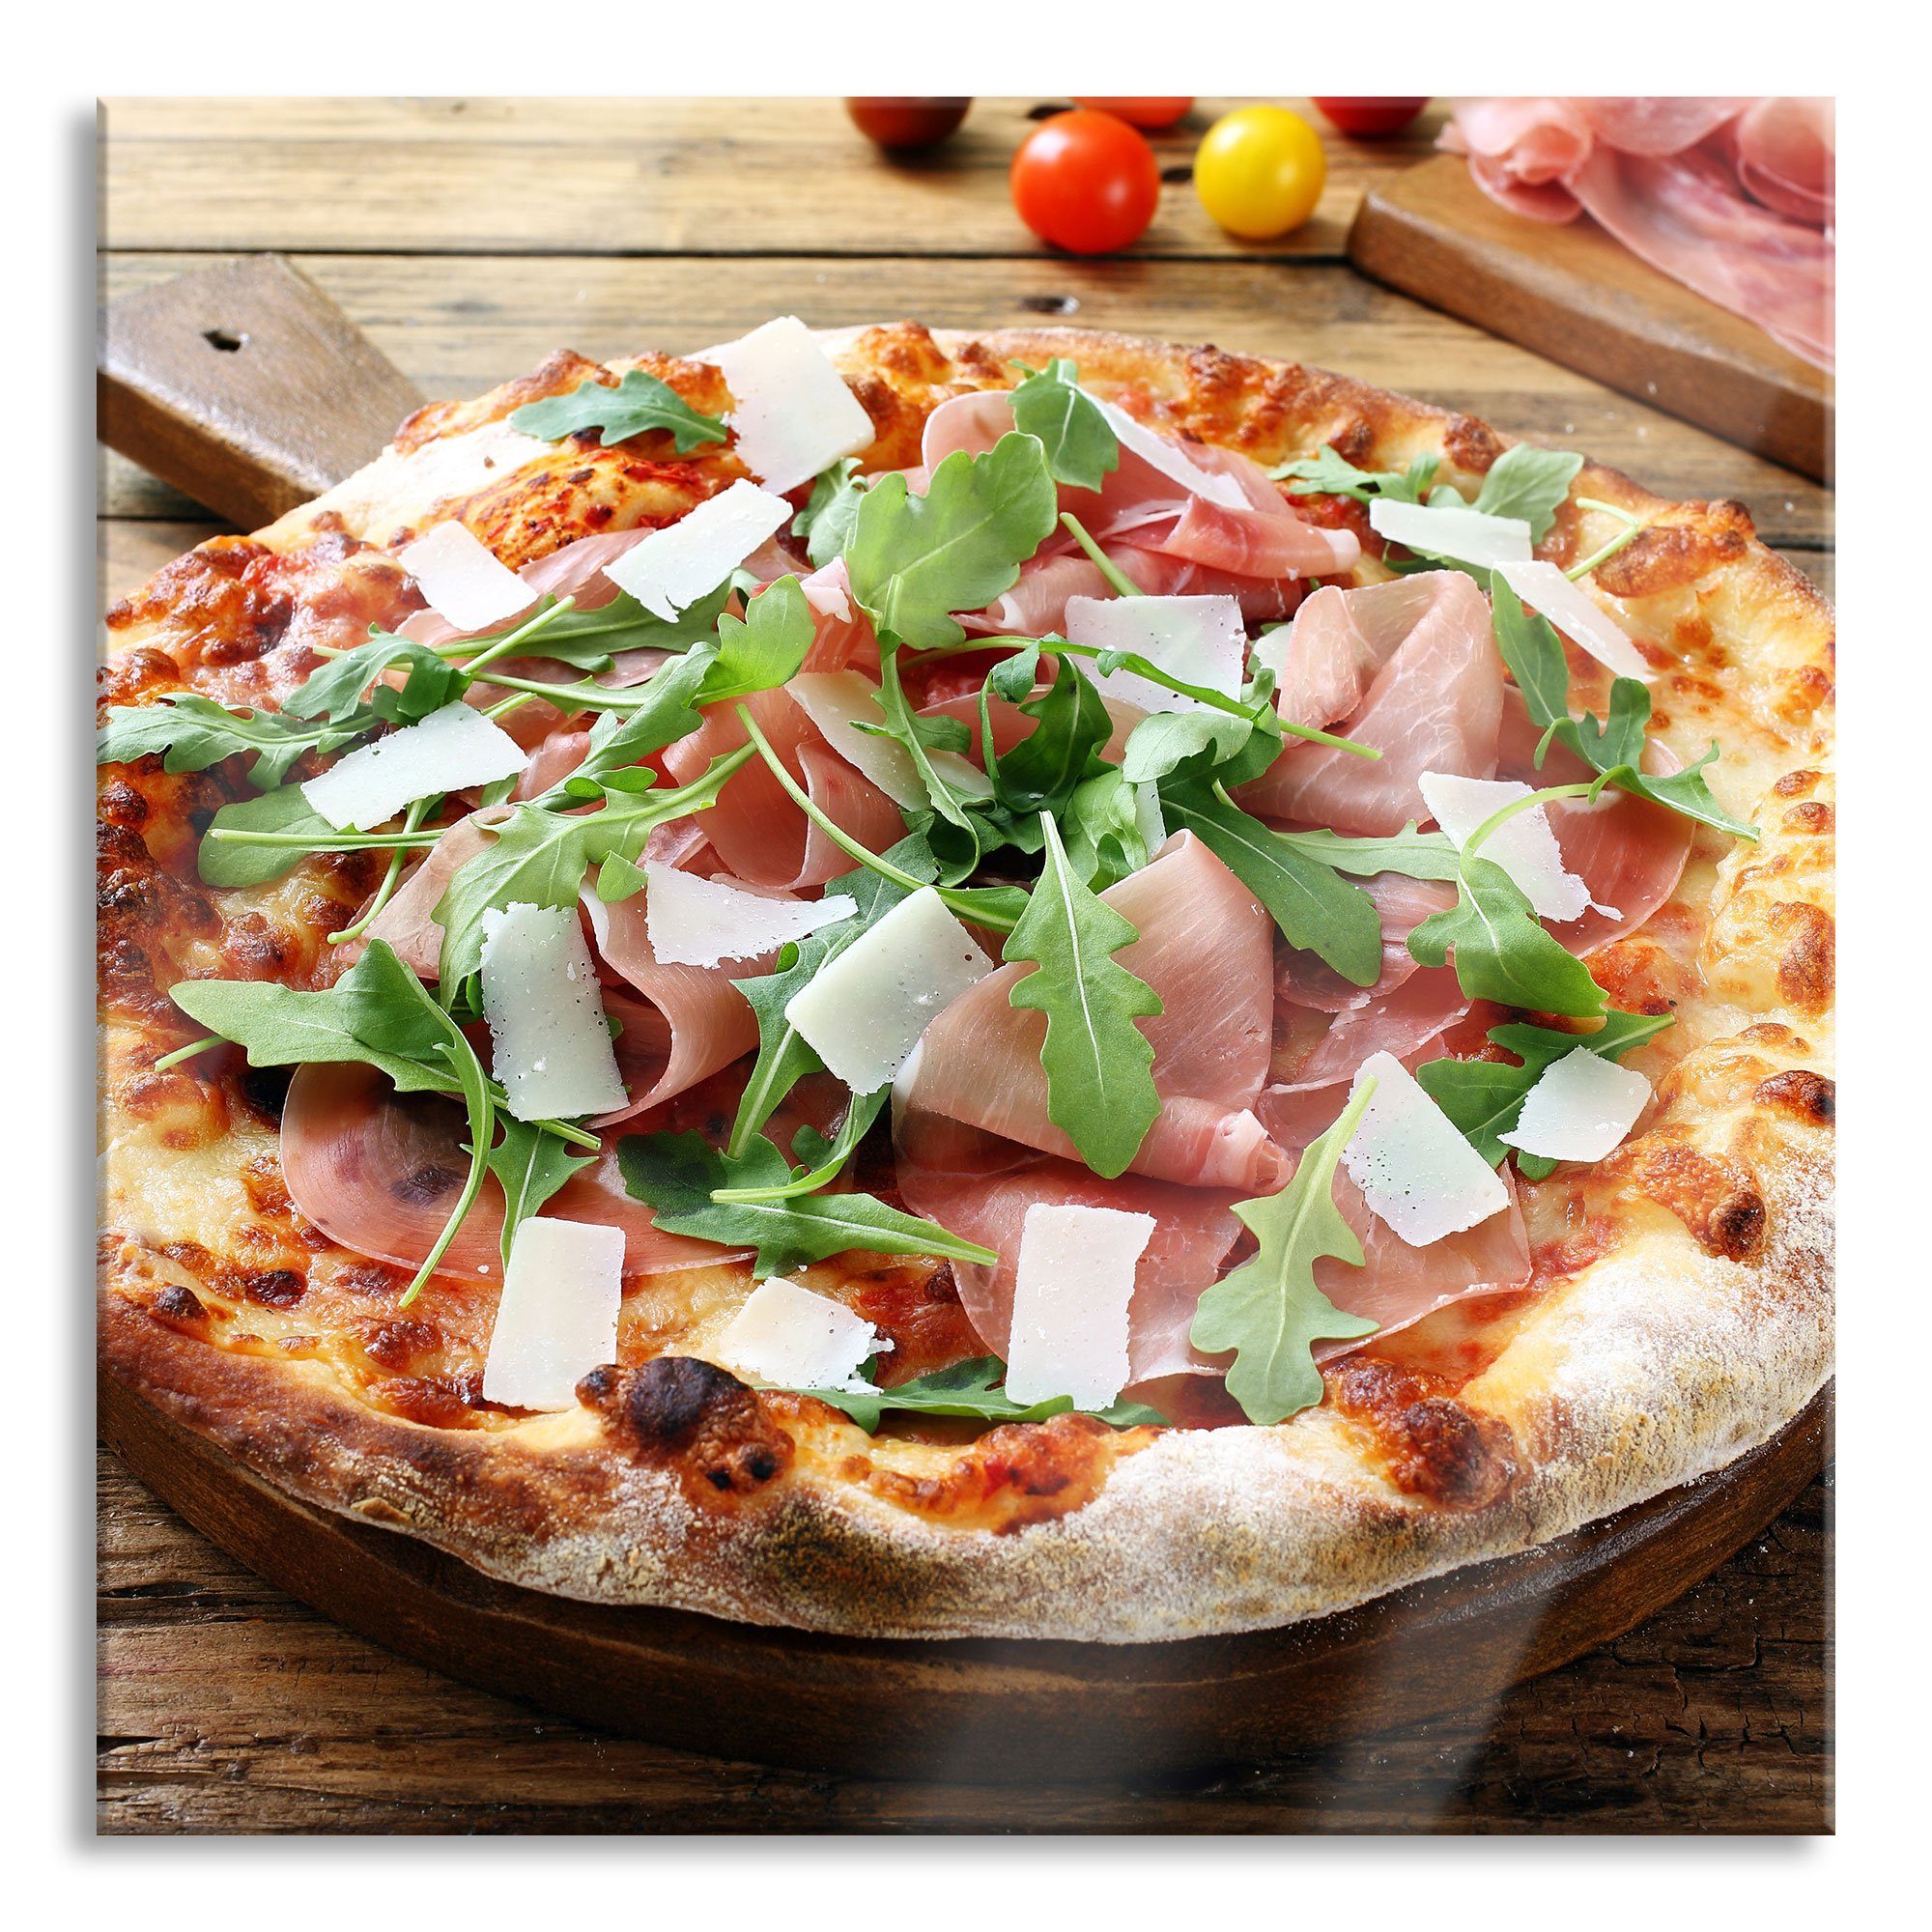 Pixxprint Glasbild Prosciutto Pizza auf Holztisch, Prosciutto Pizza auf Holztisch (1 St), Glasbild aus Echtglas, inkl. Aufhängungen und Abstandshalter